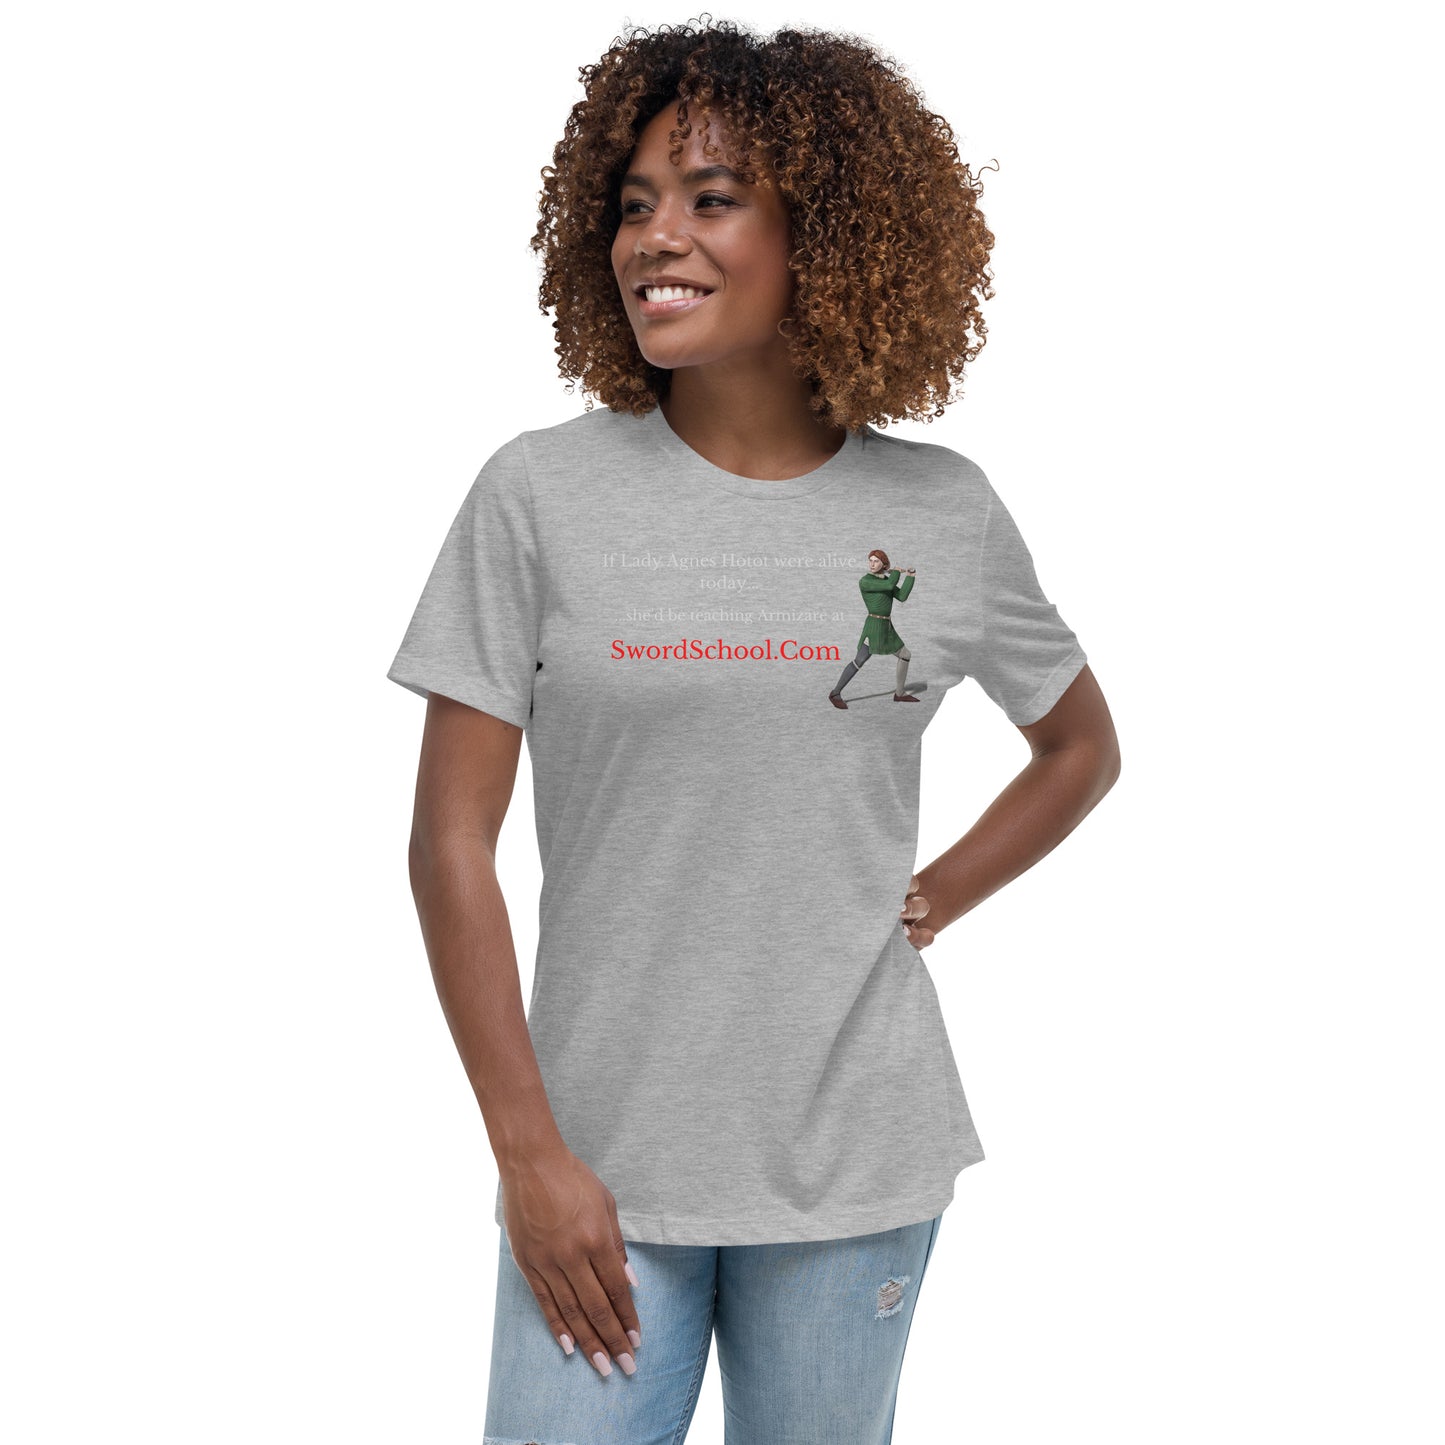 Lady Agnes women's T-shirt